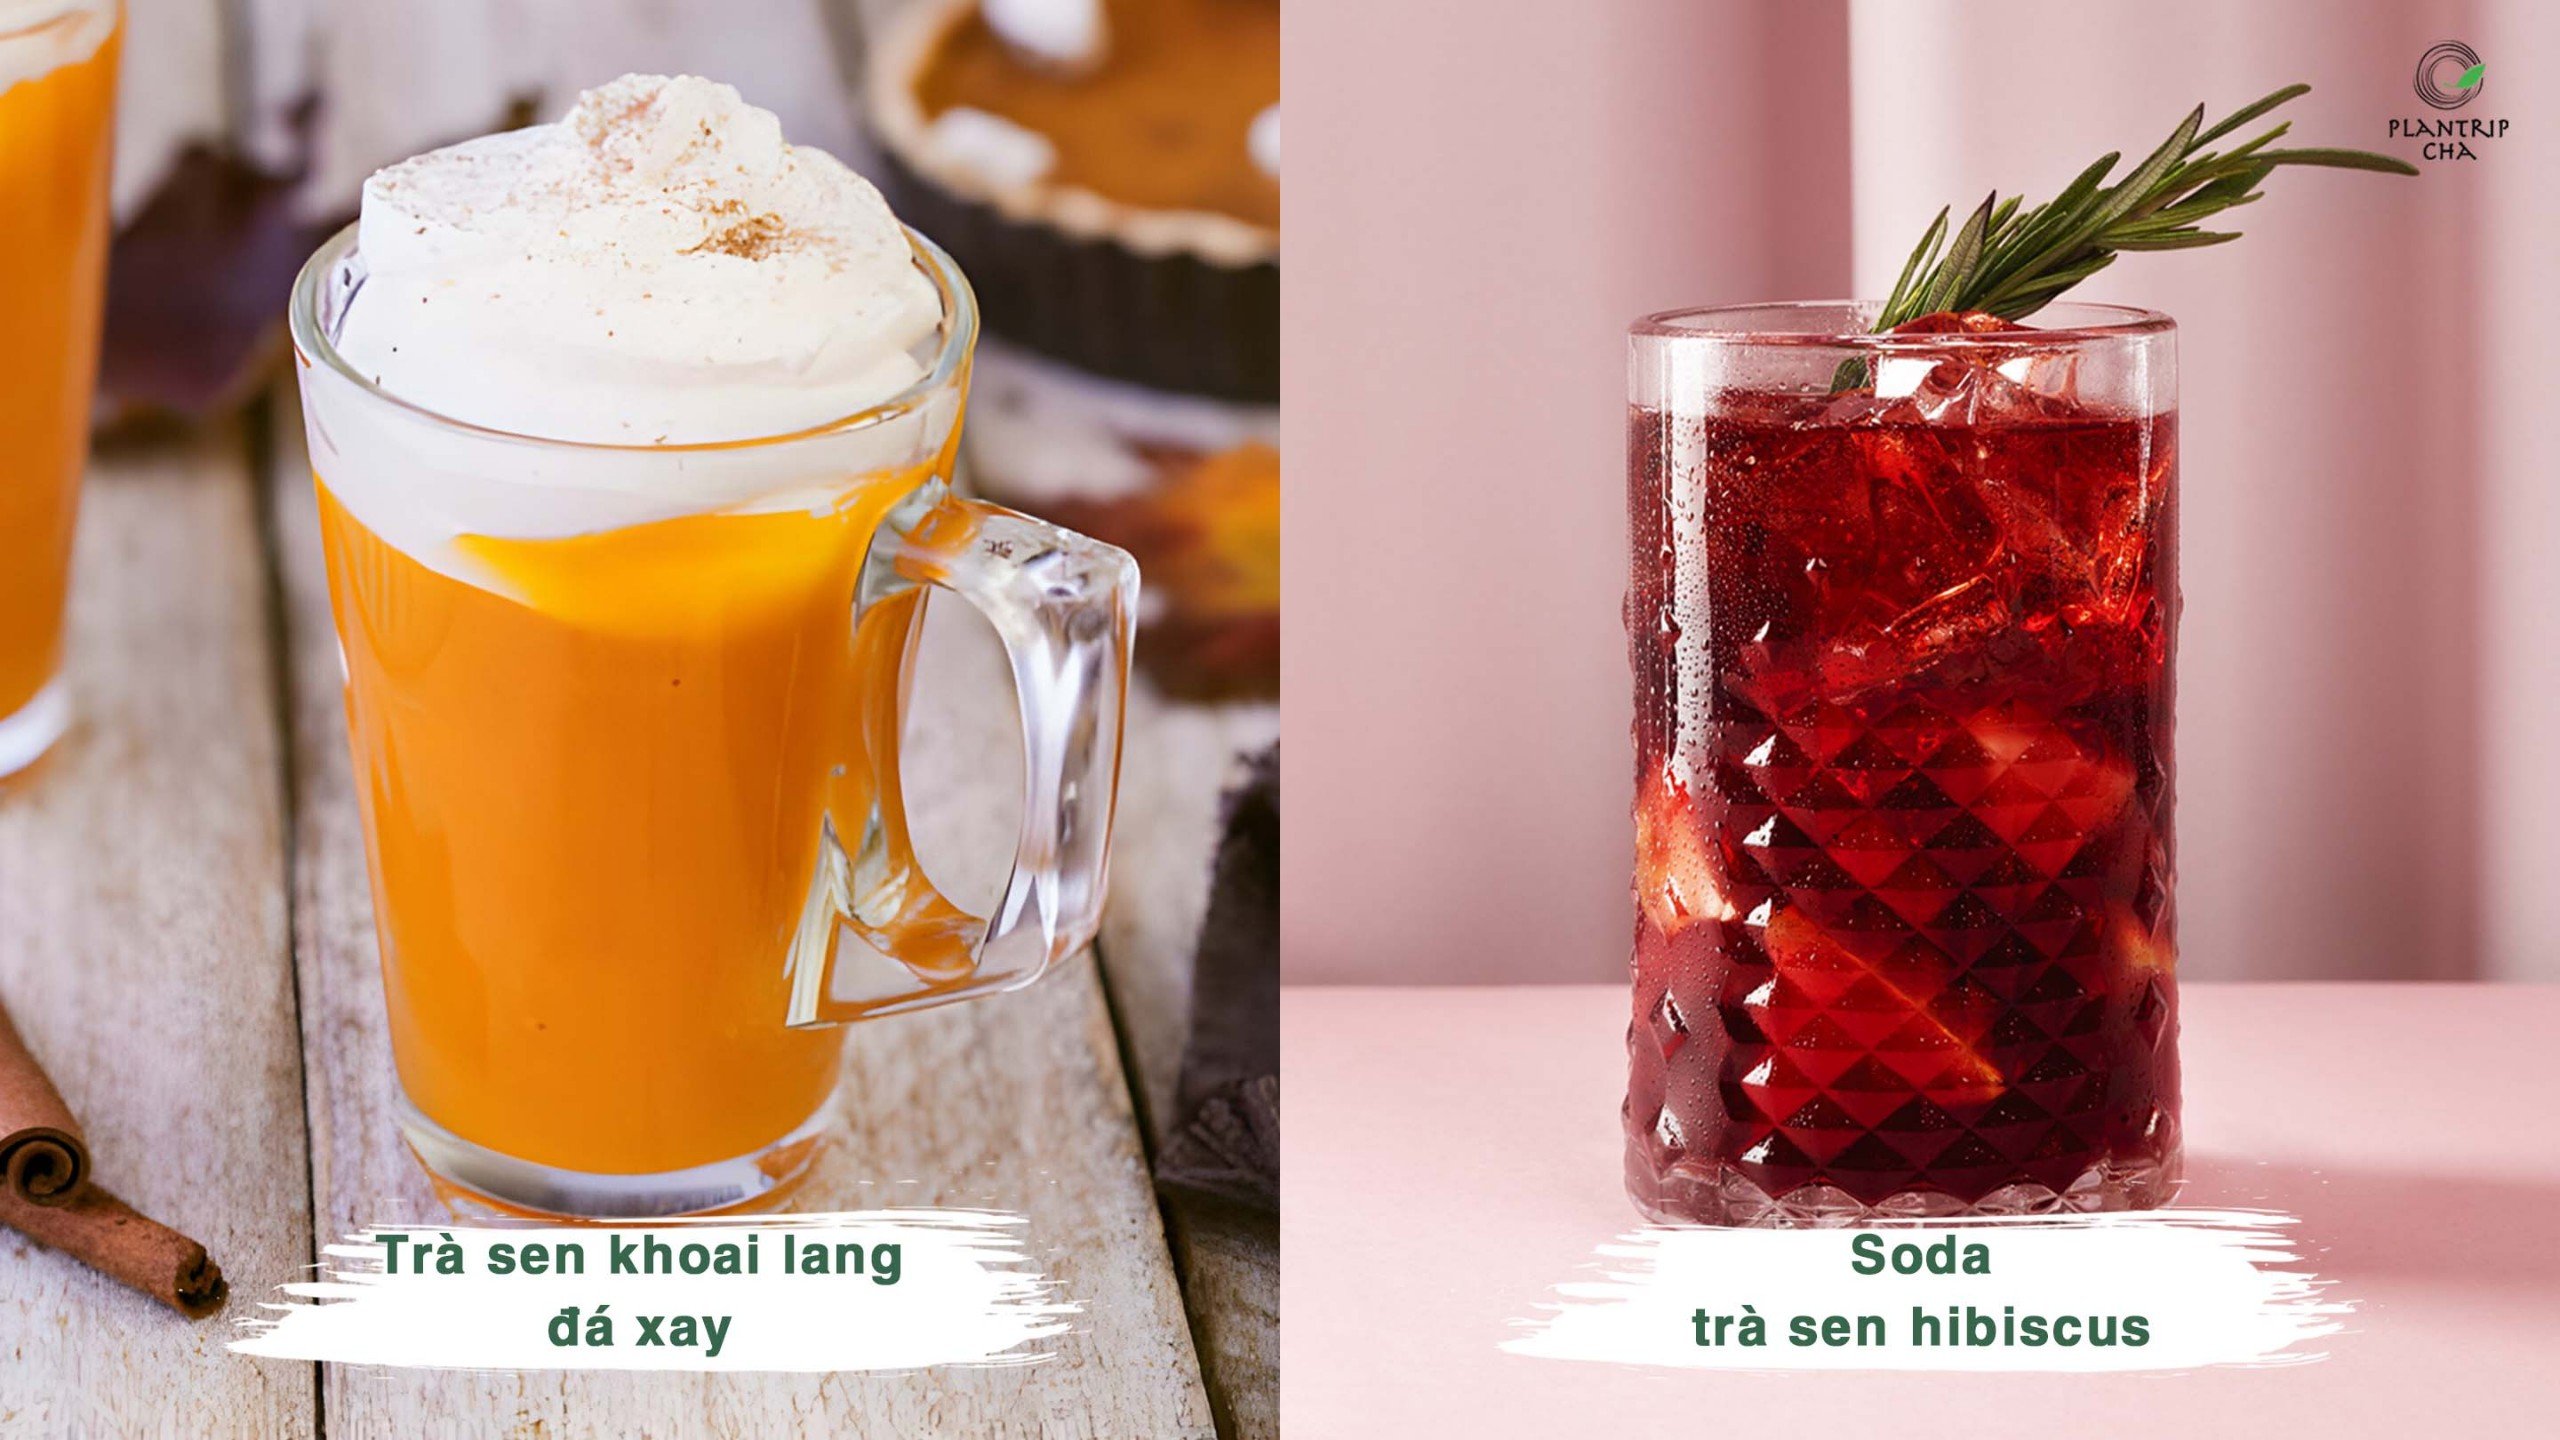 Các tuyệt phẩm làm từ Trà Xanh Sen: trà sen khoai lang đá xay, Soda trà sen hibiscus.